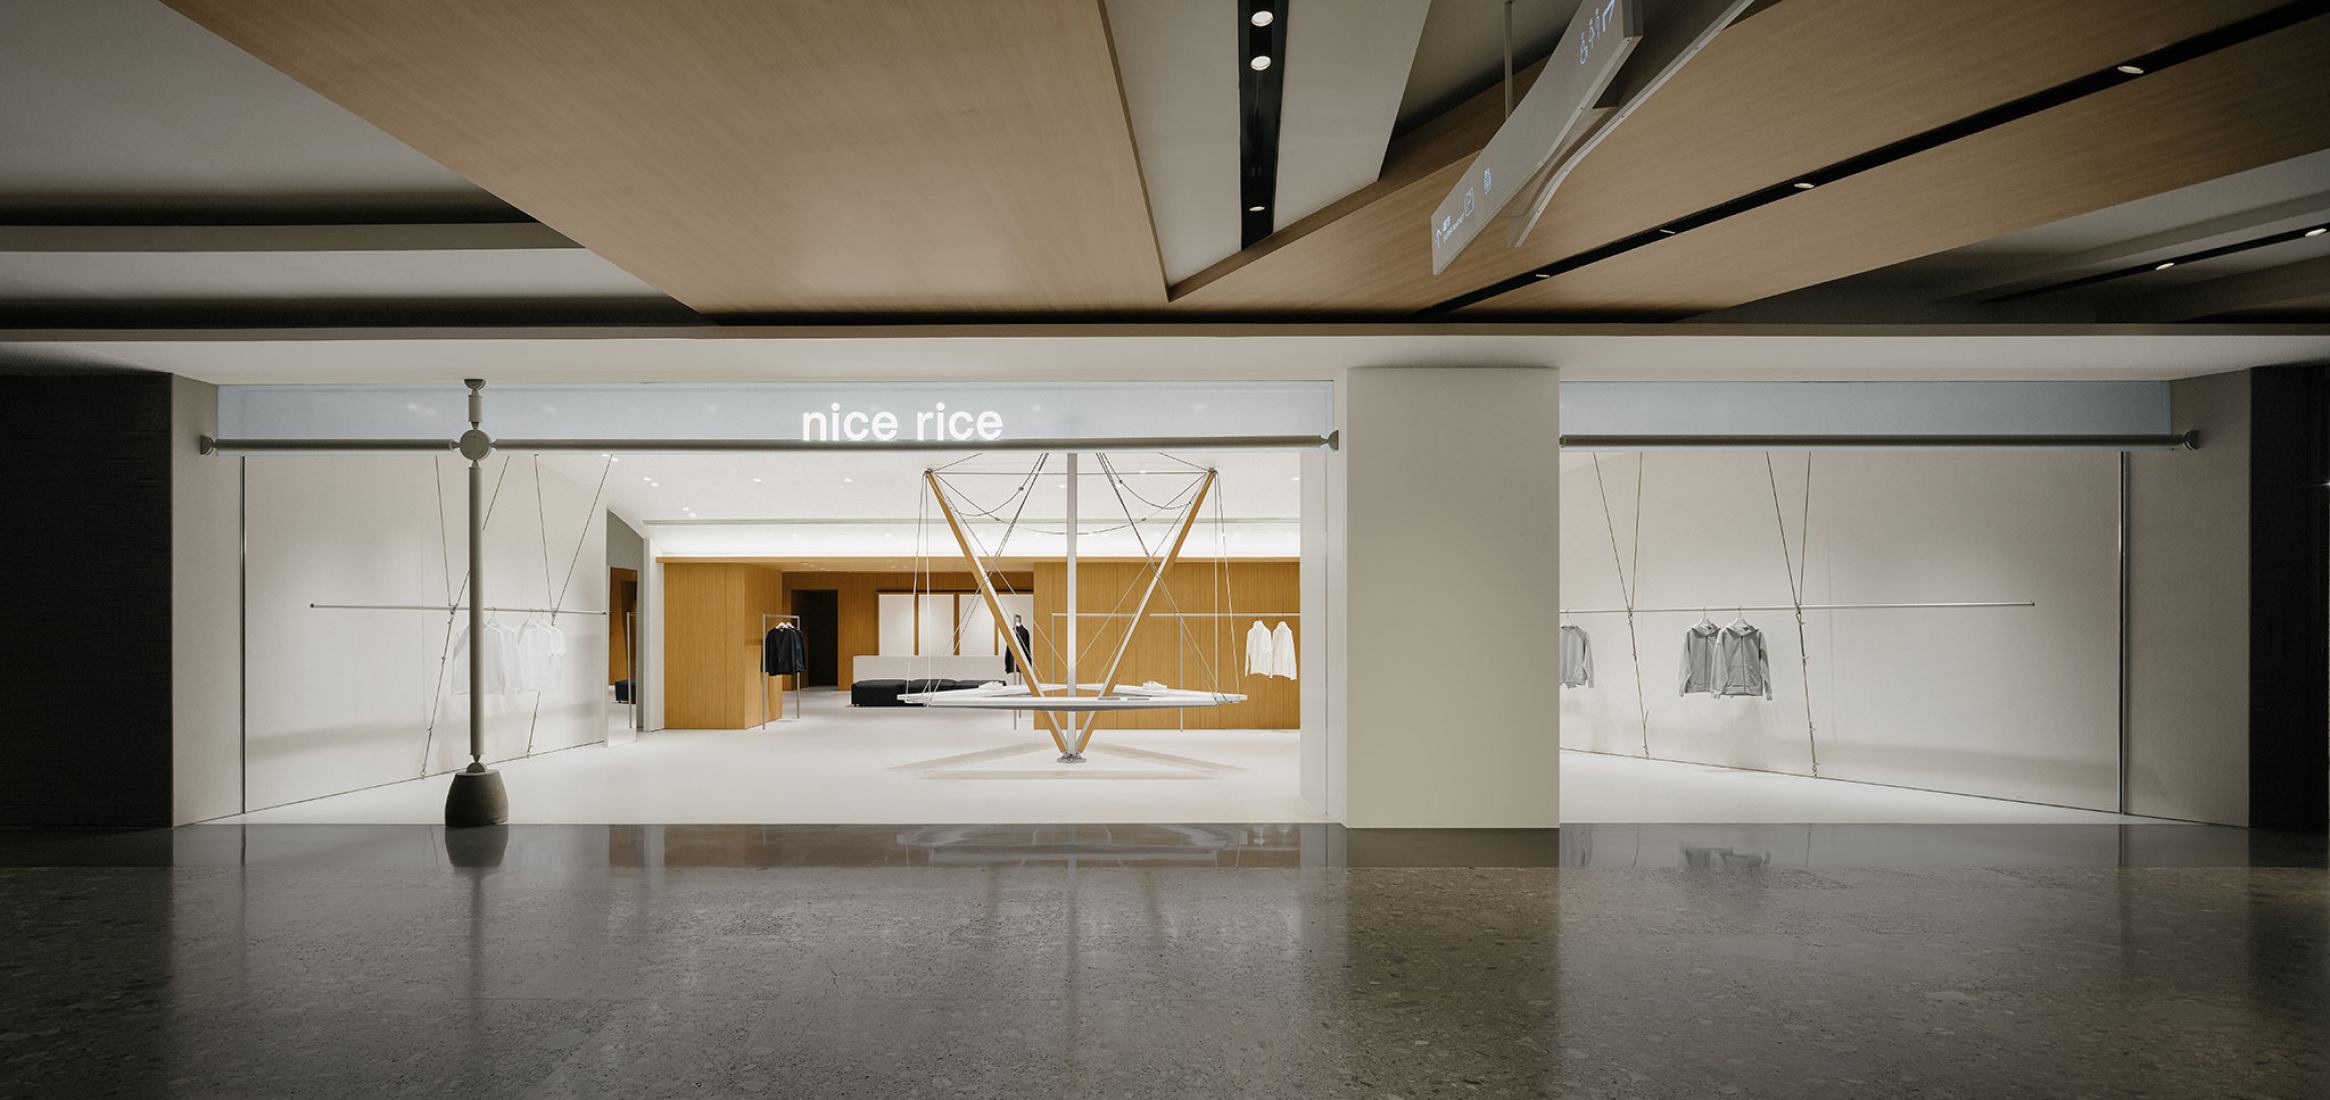 Nice rice, tienda en Shenzhen por Say Architects. Fotografía por Yanyu.